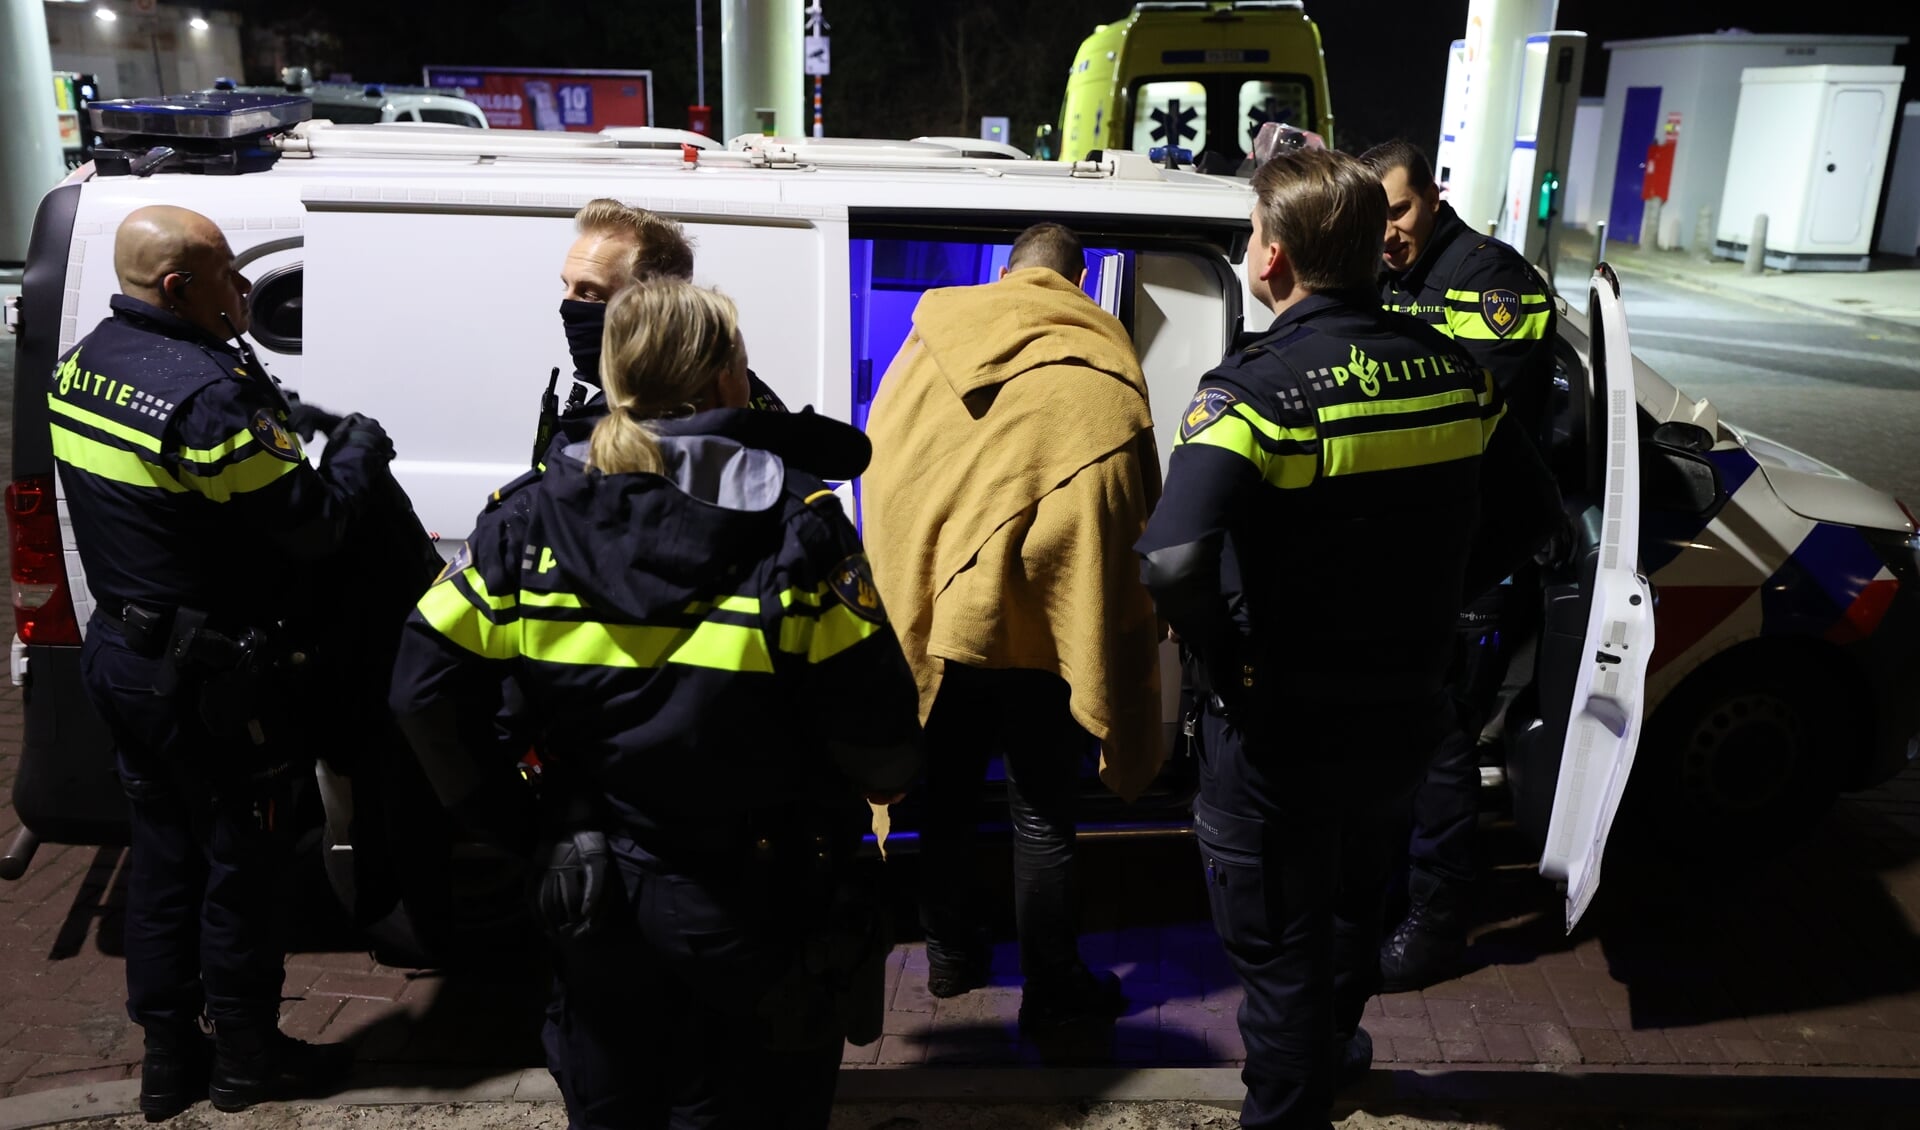 De doorweekte verdachte werd uit een sloot gevist en aangehouden (foto: Daan van den Ende).